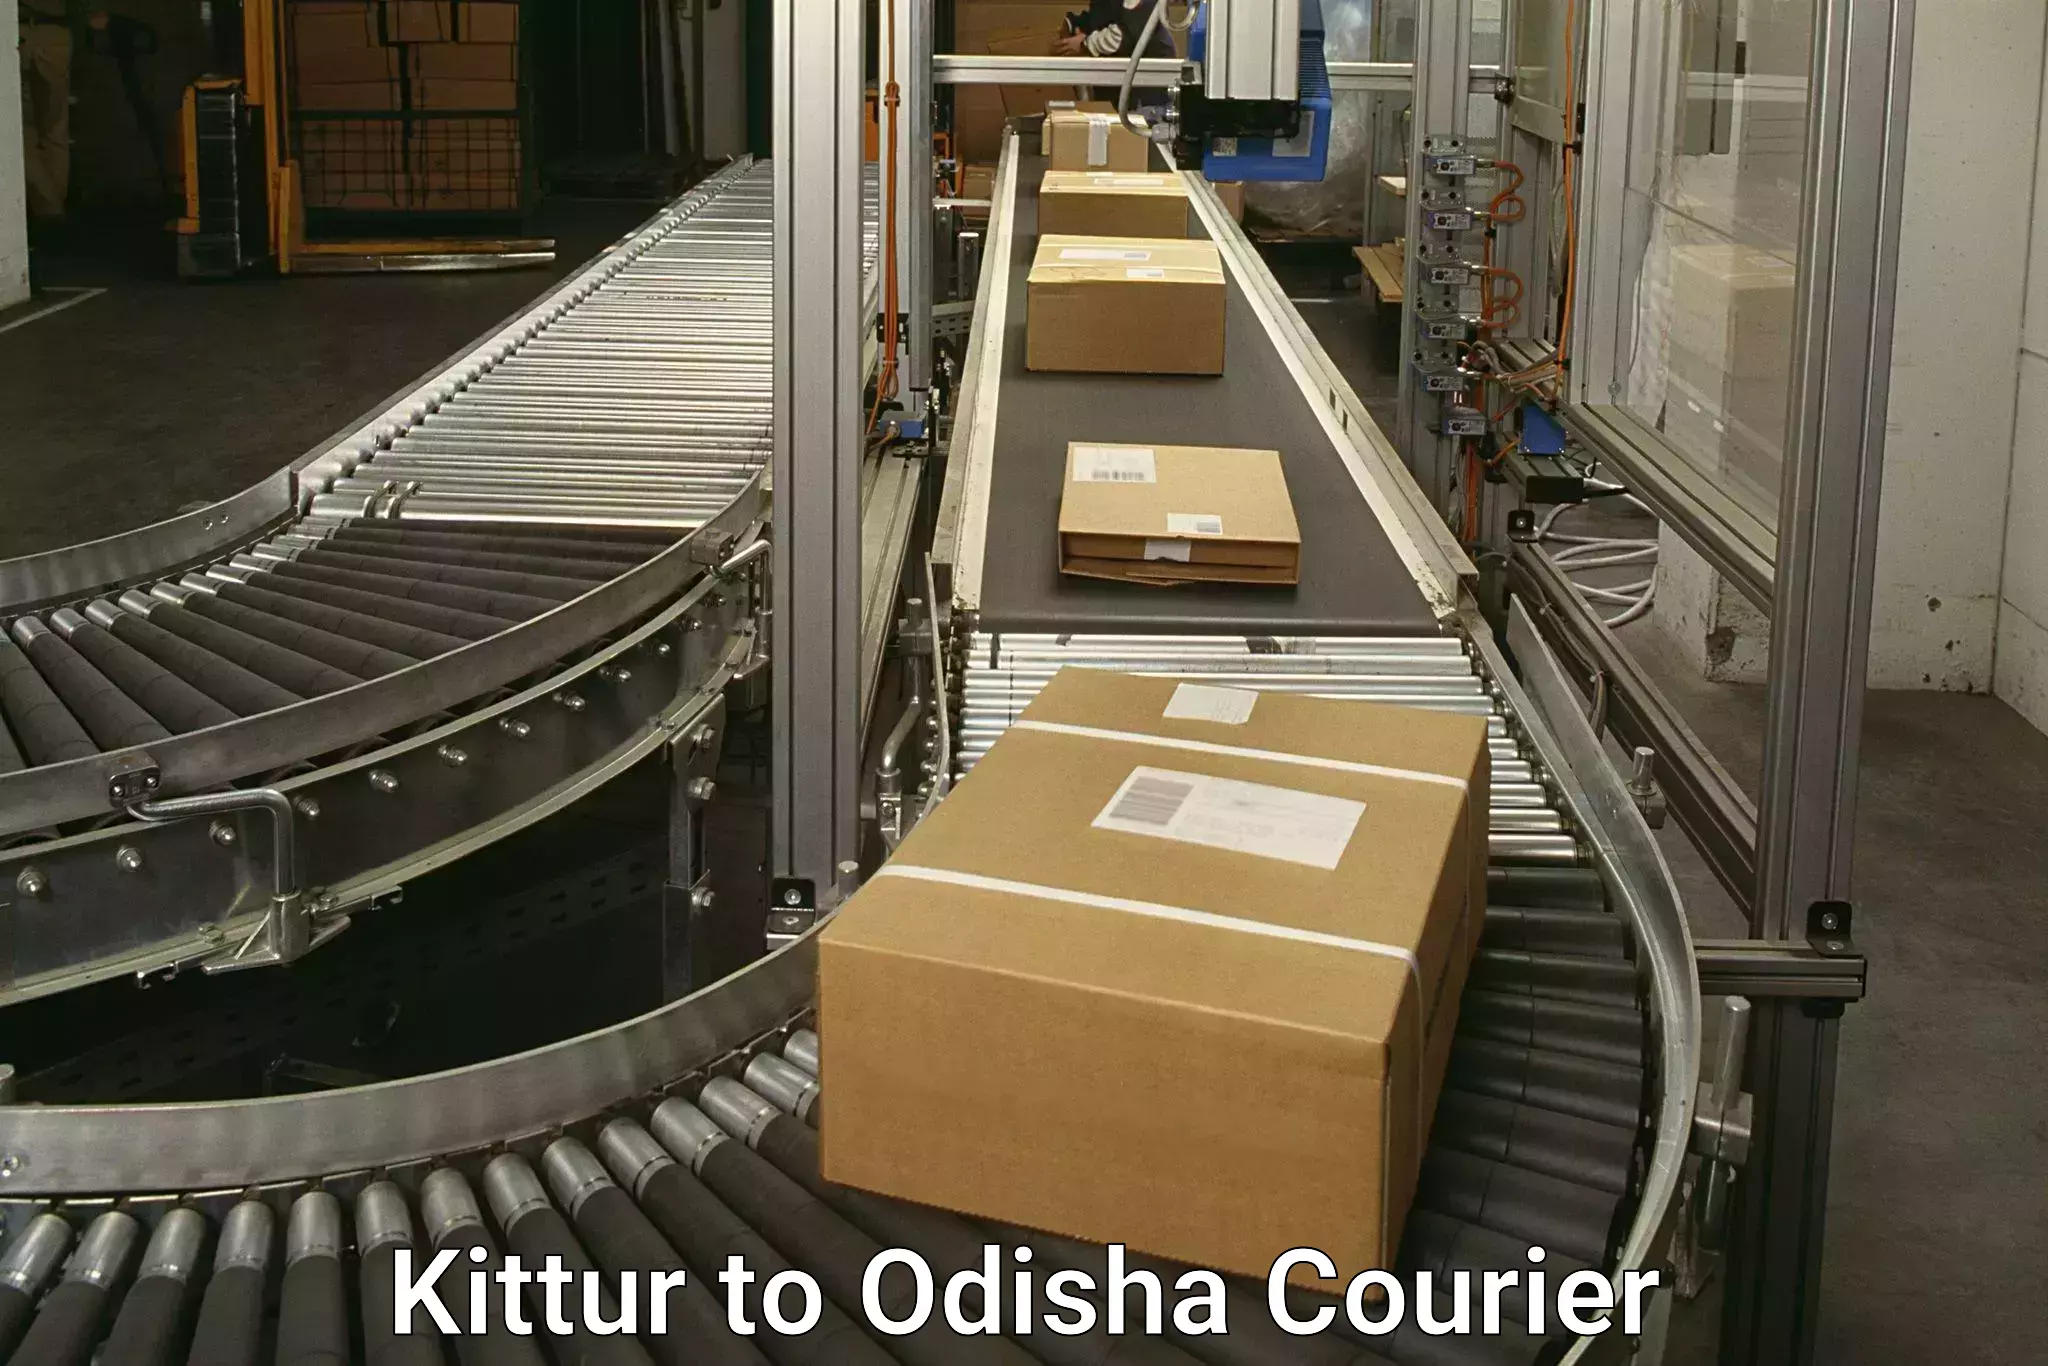 Online shipping calculator Kittur to Odisha